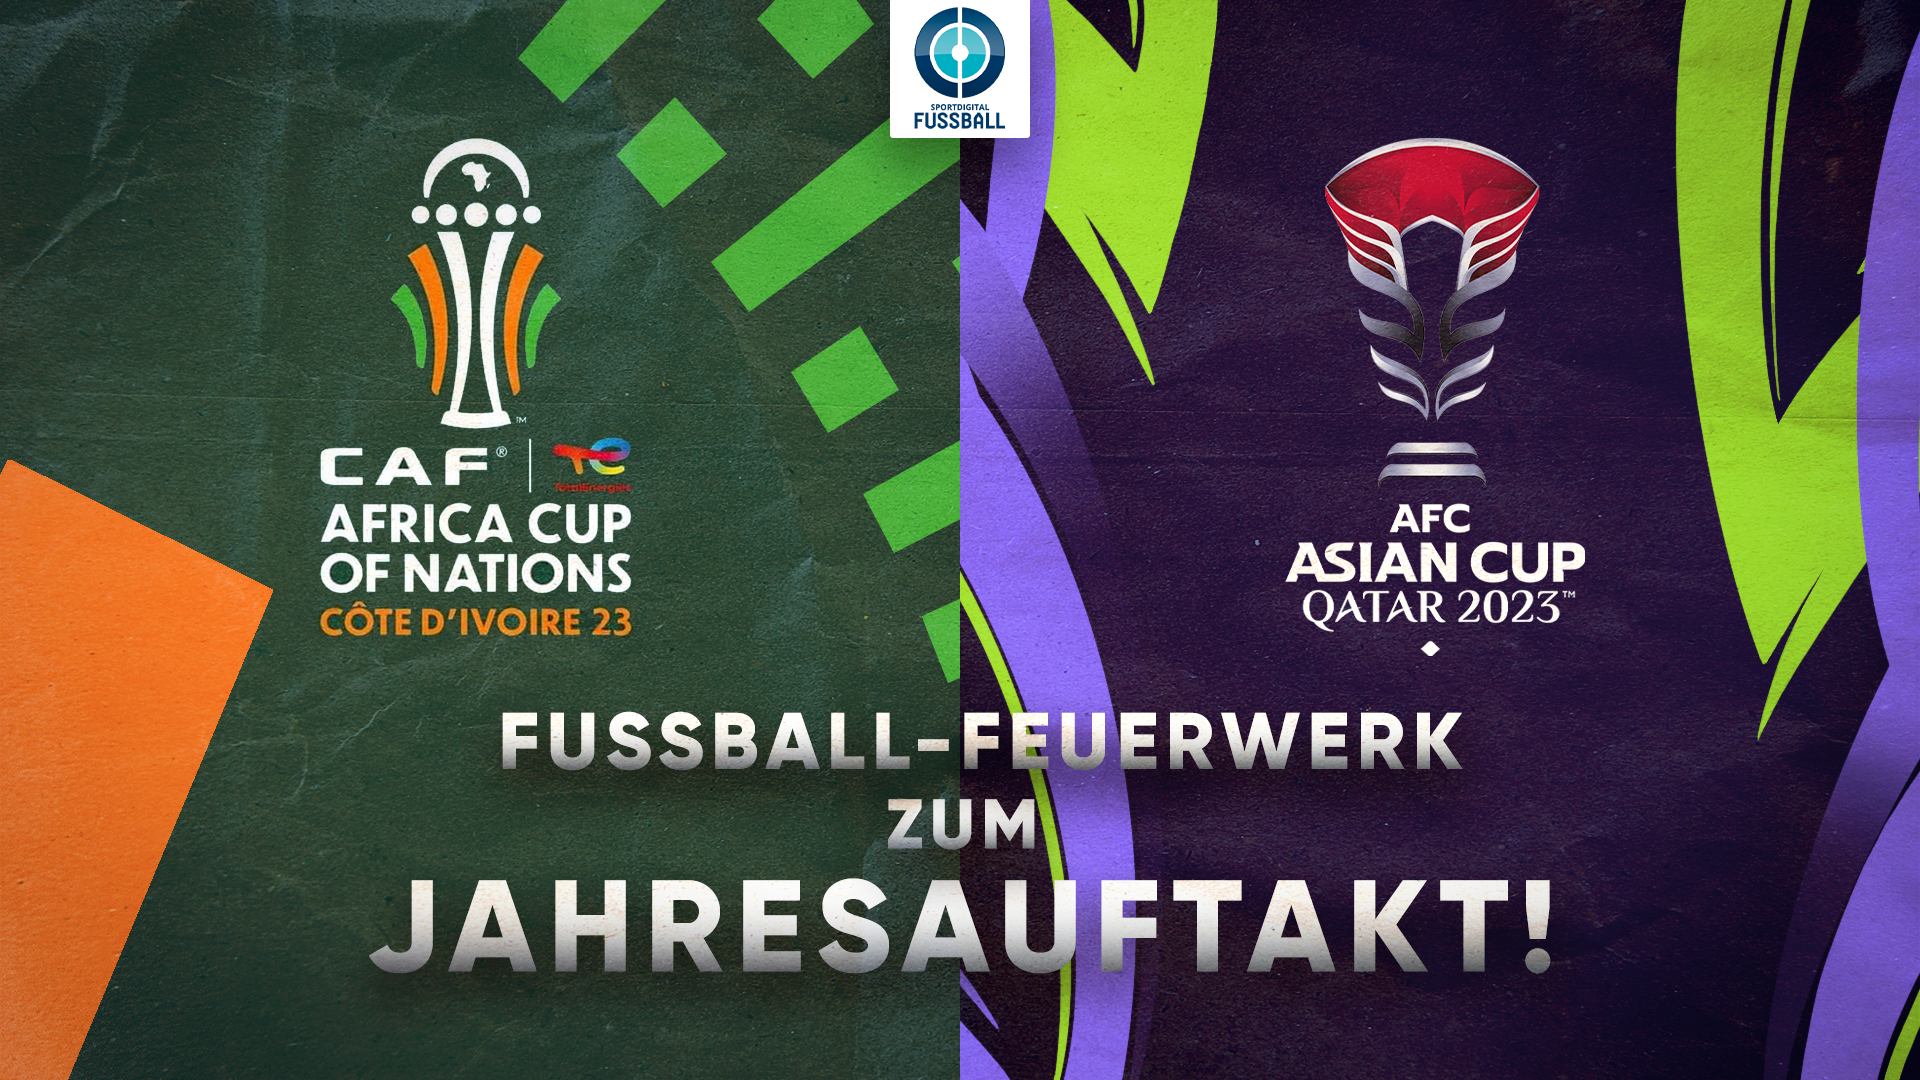 Fußball-Feuerwerk zum Jahresauftakt! Mit Afrika-Cup & Asien-Cup zeigt Sportdigital FUSSBALL gleich zwei Kontinentalmeisterschaften live!